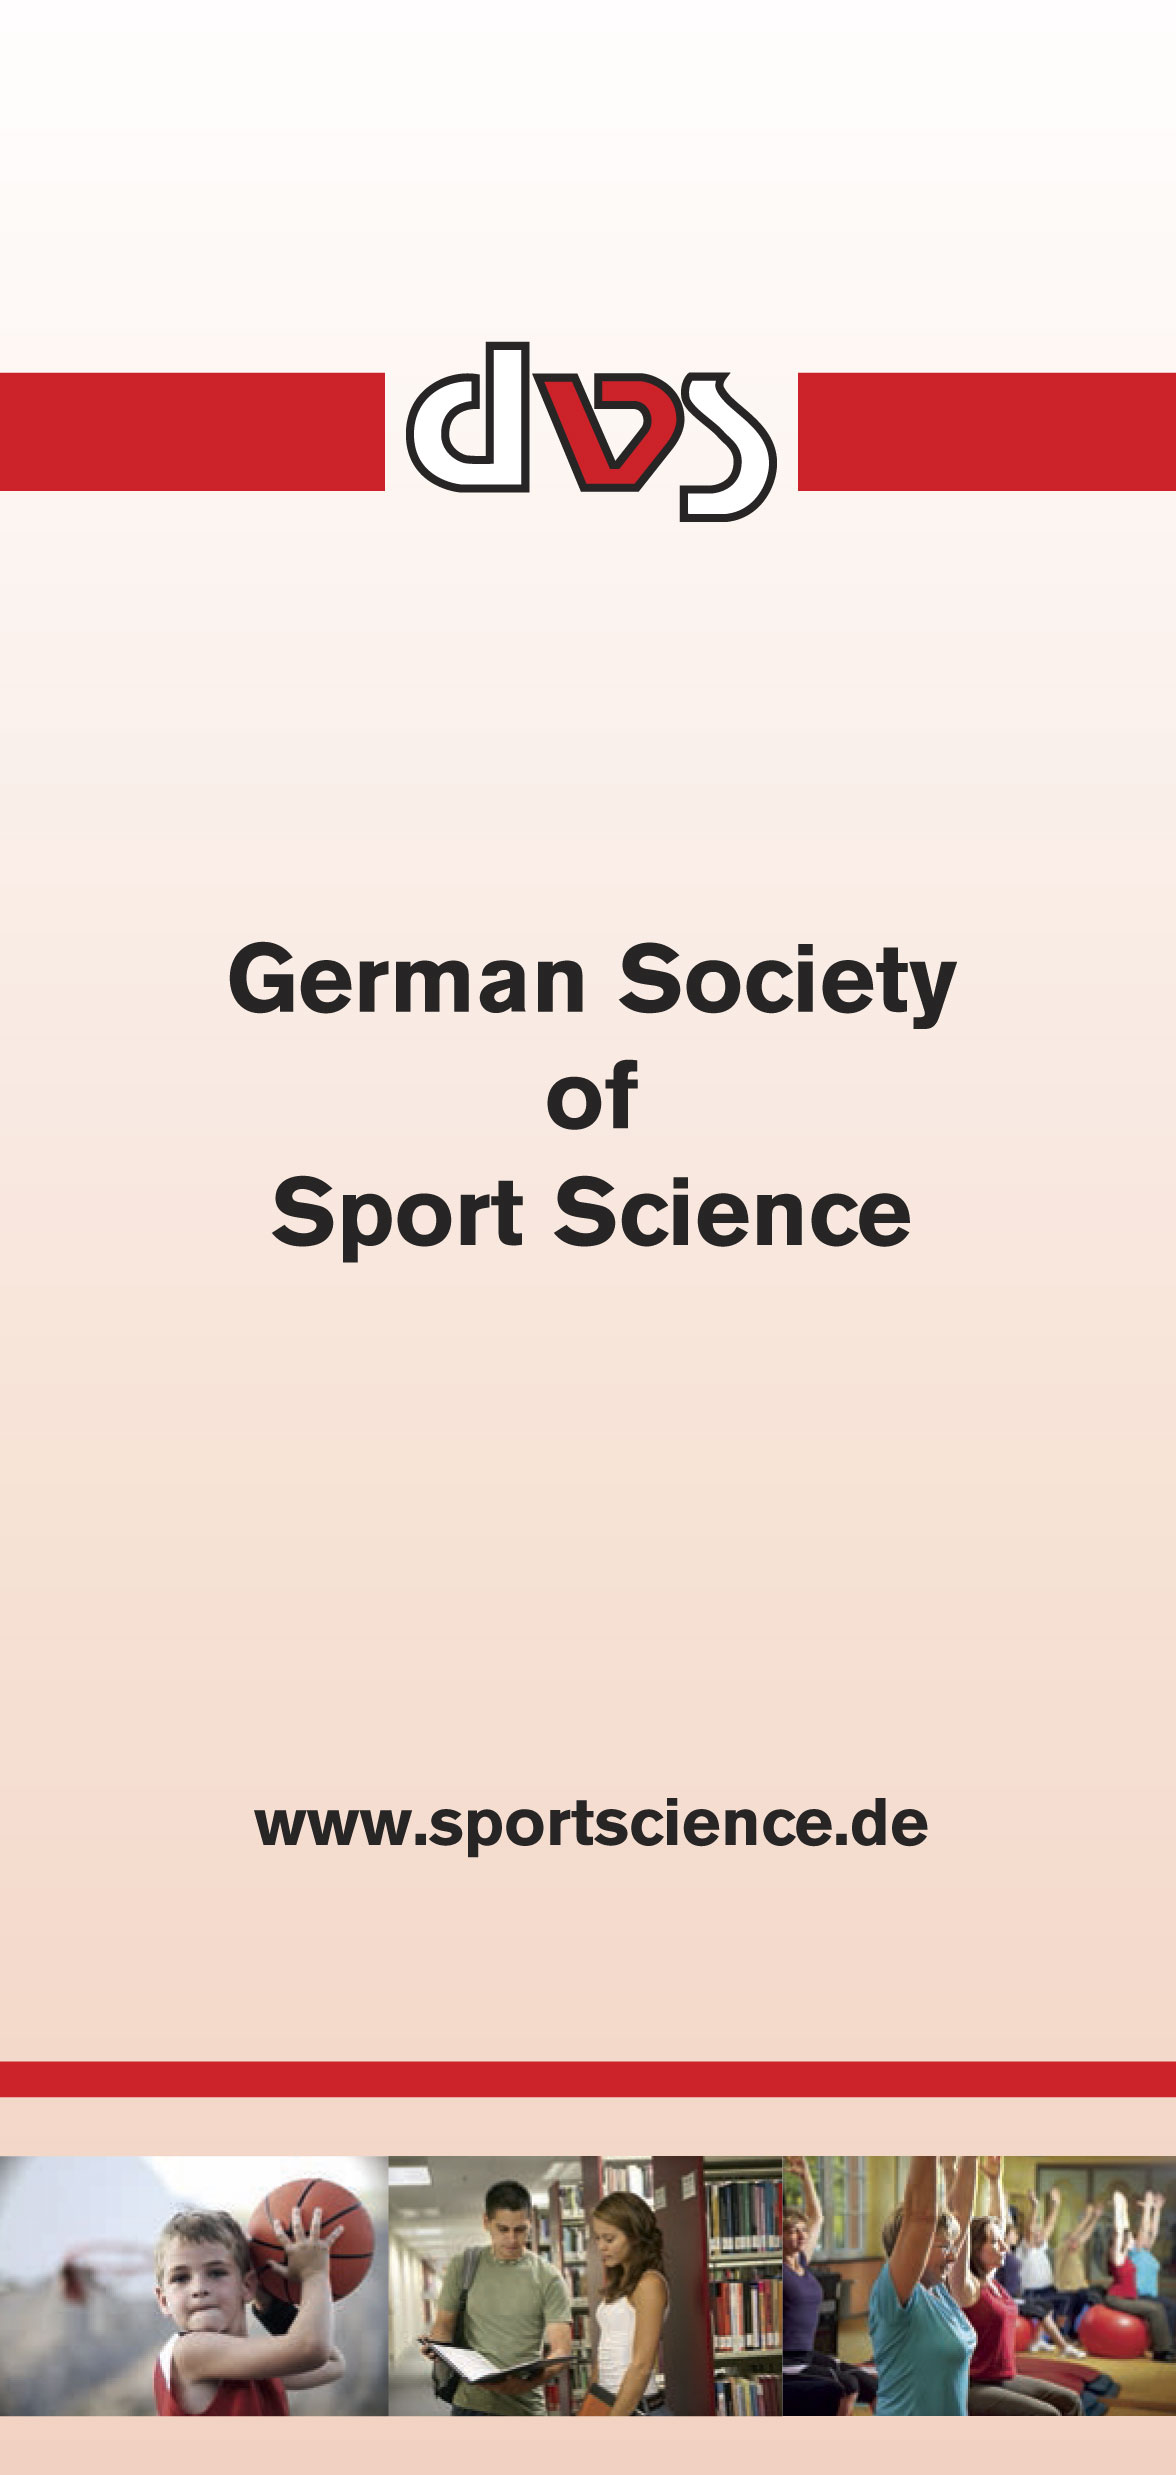 Home dvs Deutsche Vereinigung für Sportwissenschaft